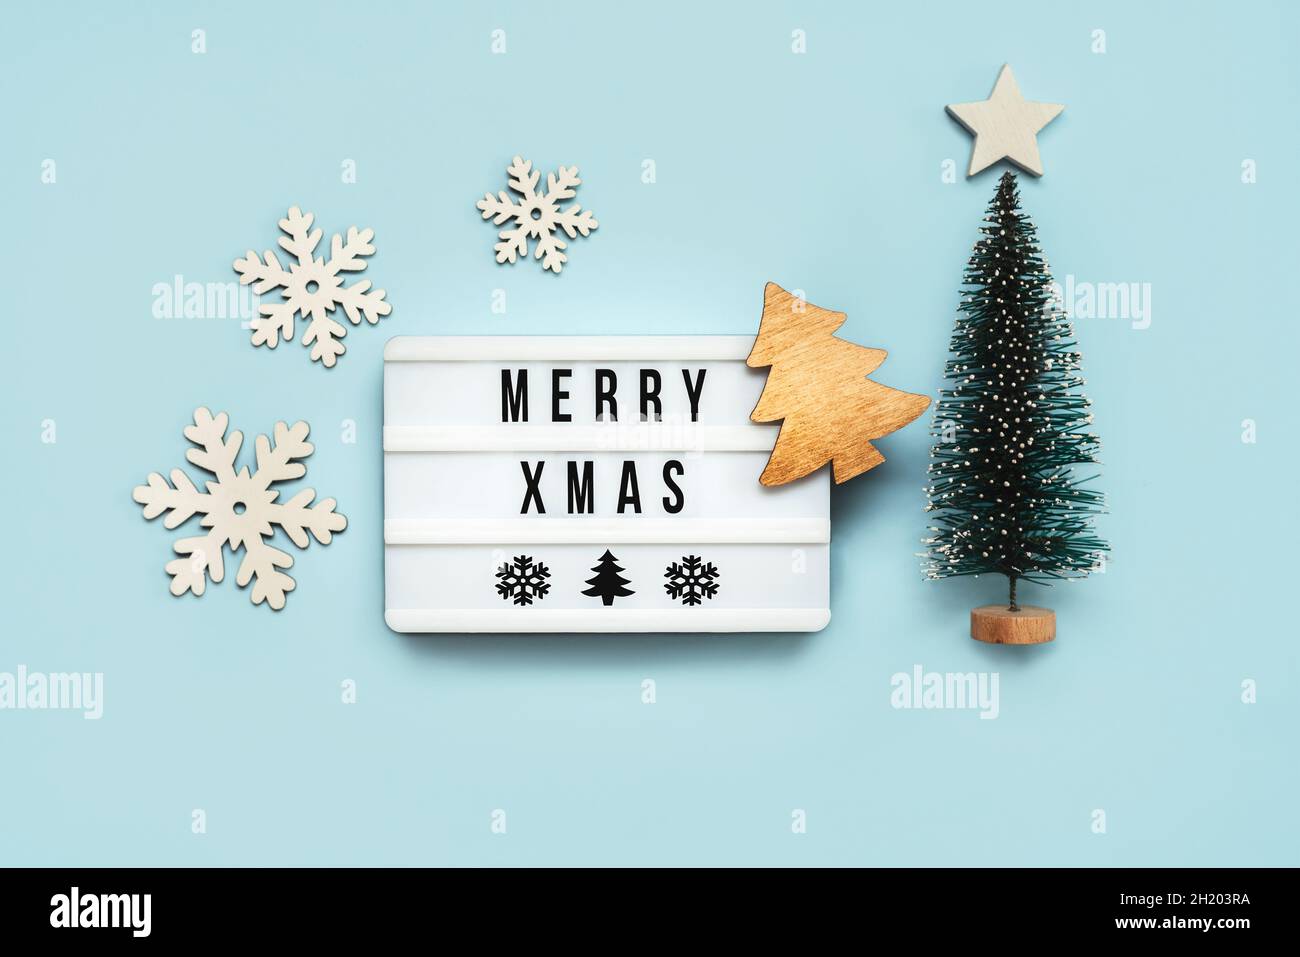 Merry Christmas.Light Box avec le texte Merry Xmas et la décoration de Noël sur fond bleu.Christmas concept background Banque D'Images